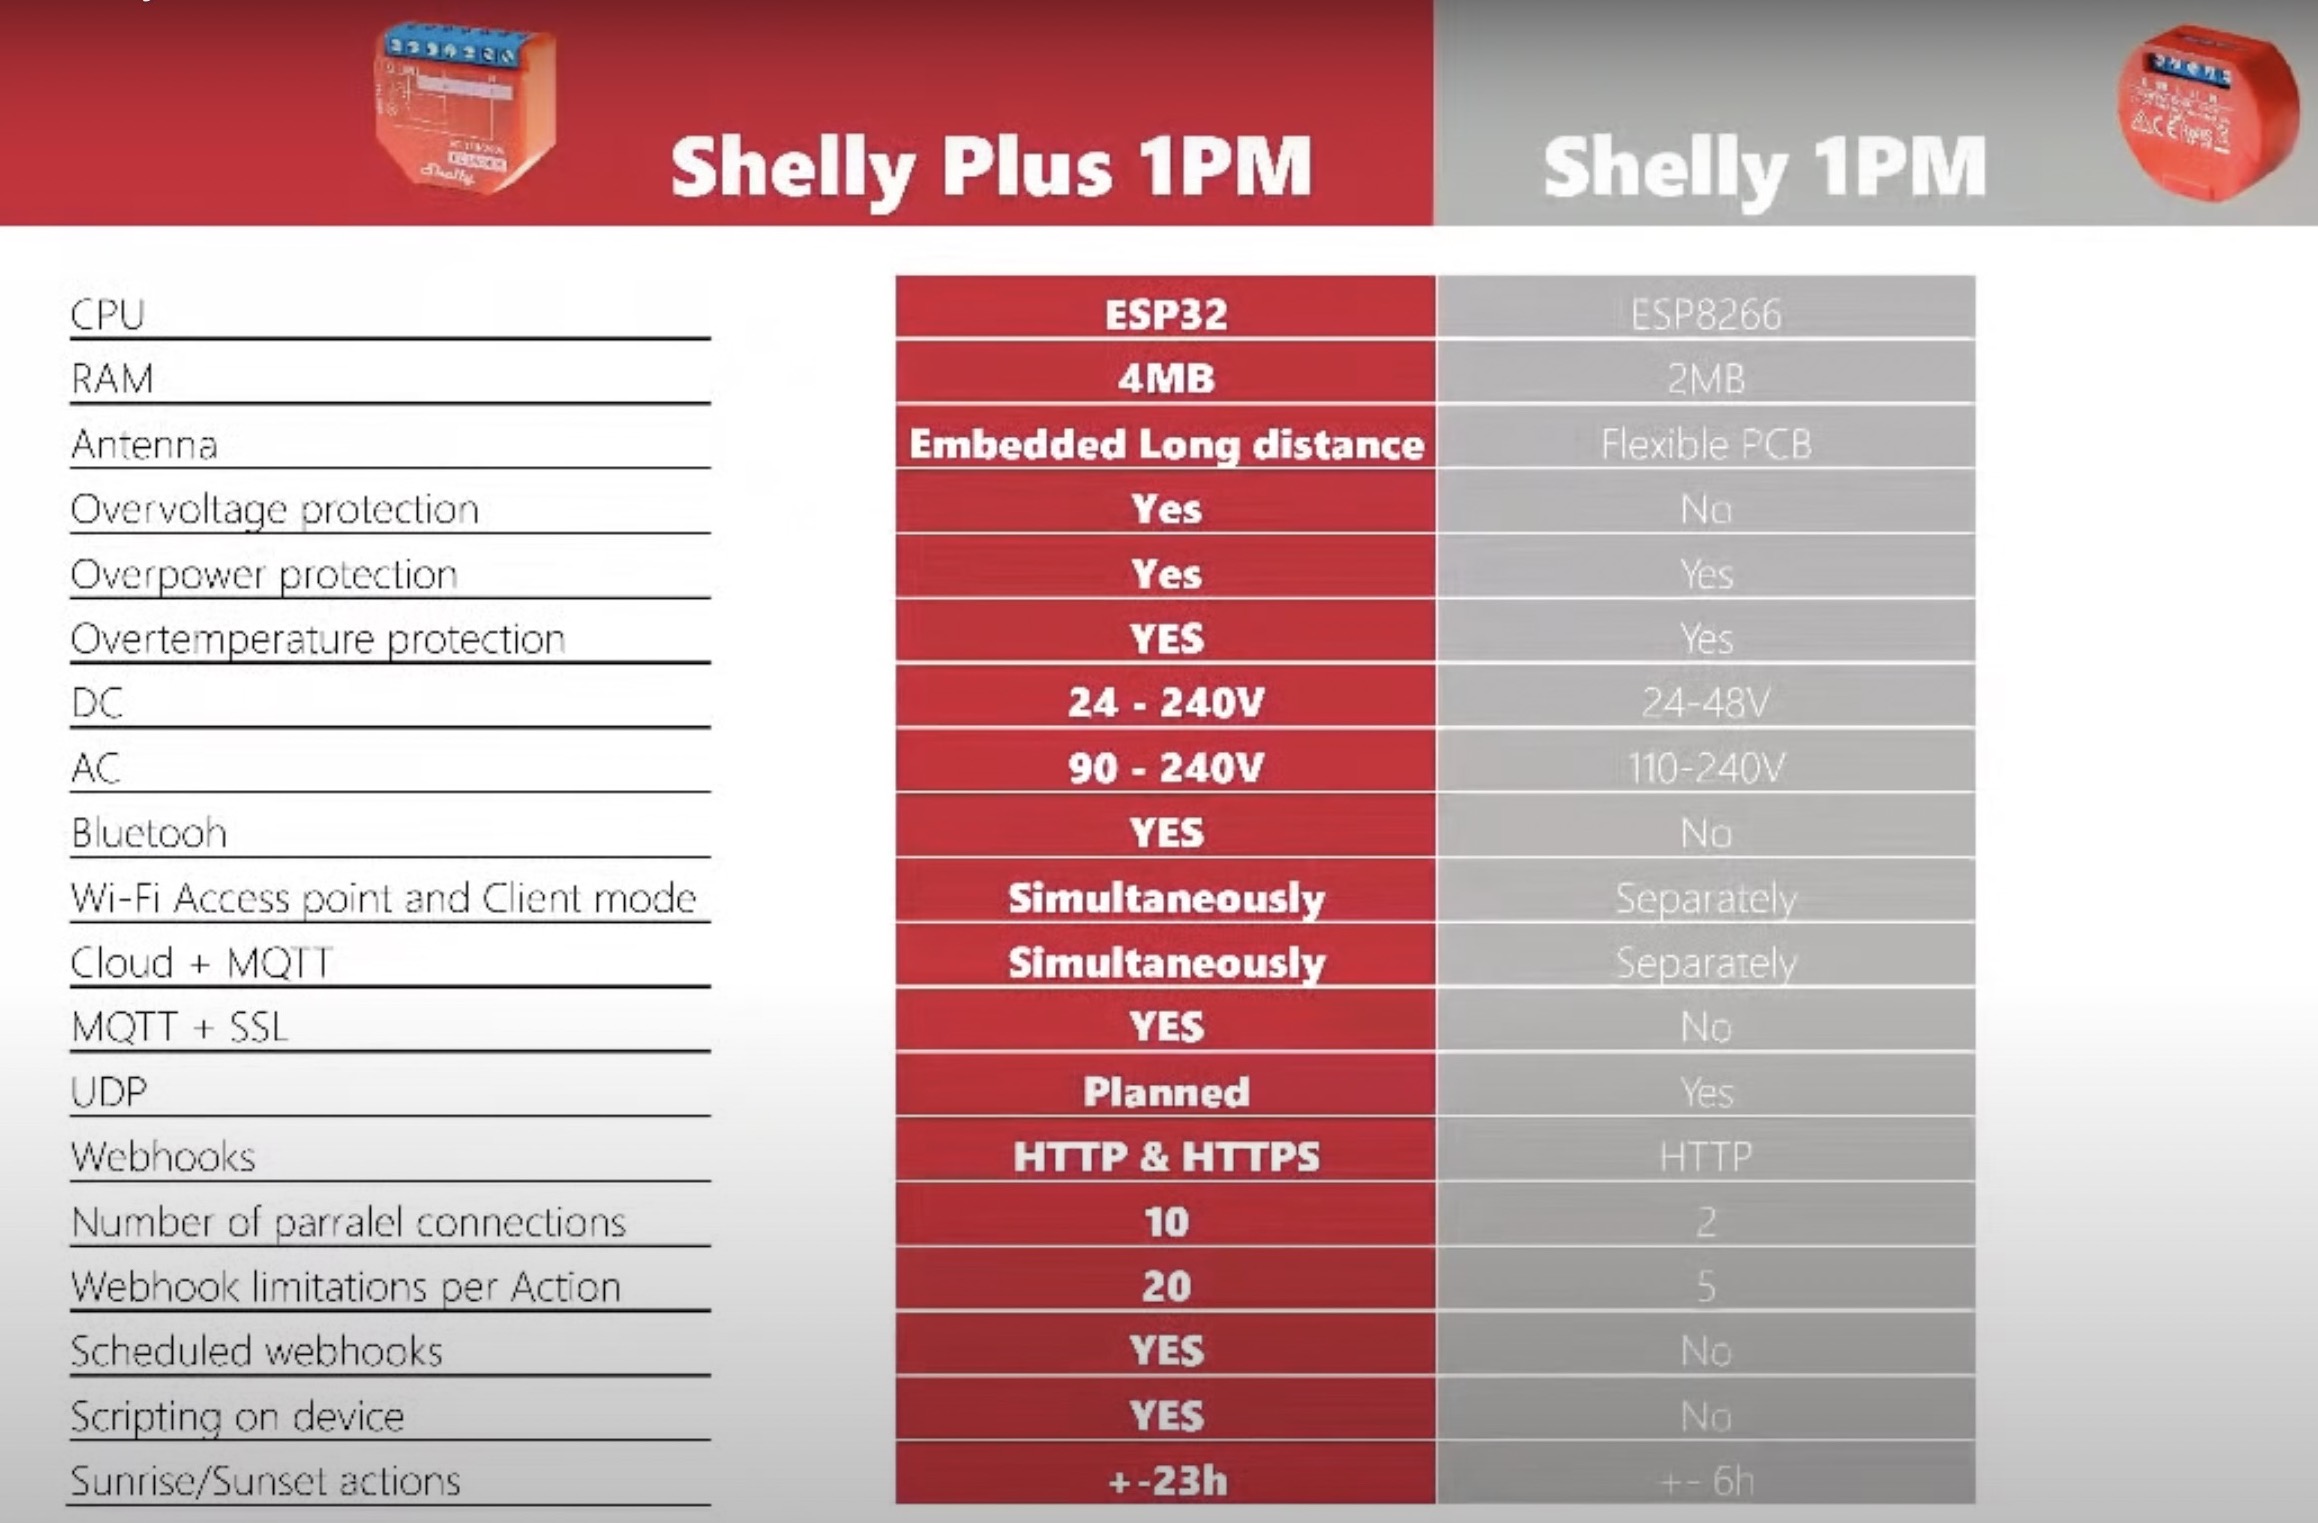 Shelly Plus 1PM vs Shelly 1PM technical comparison